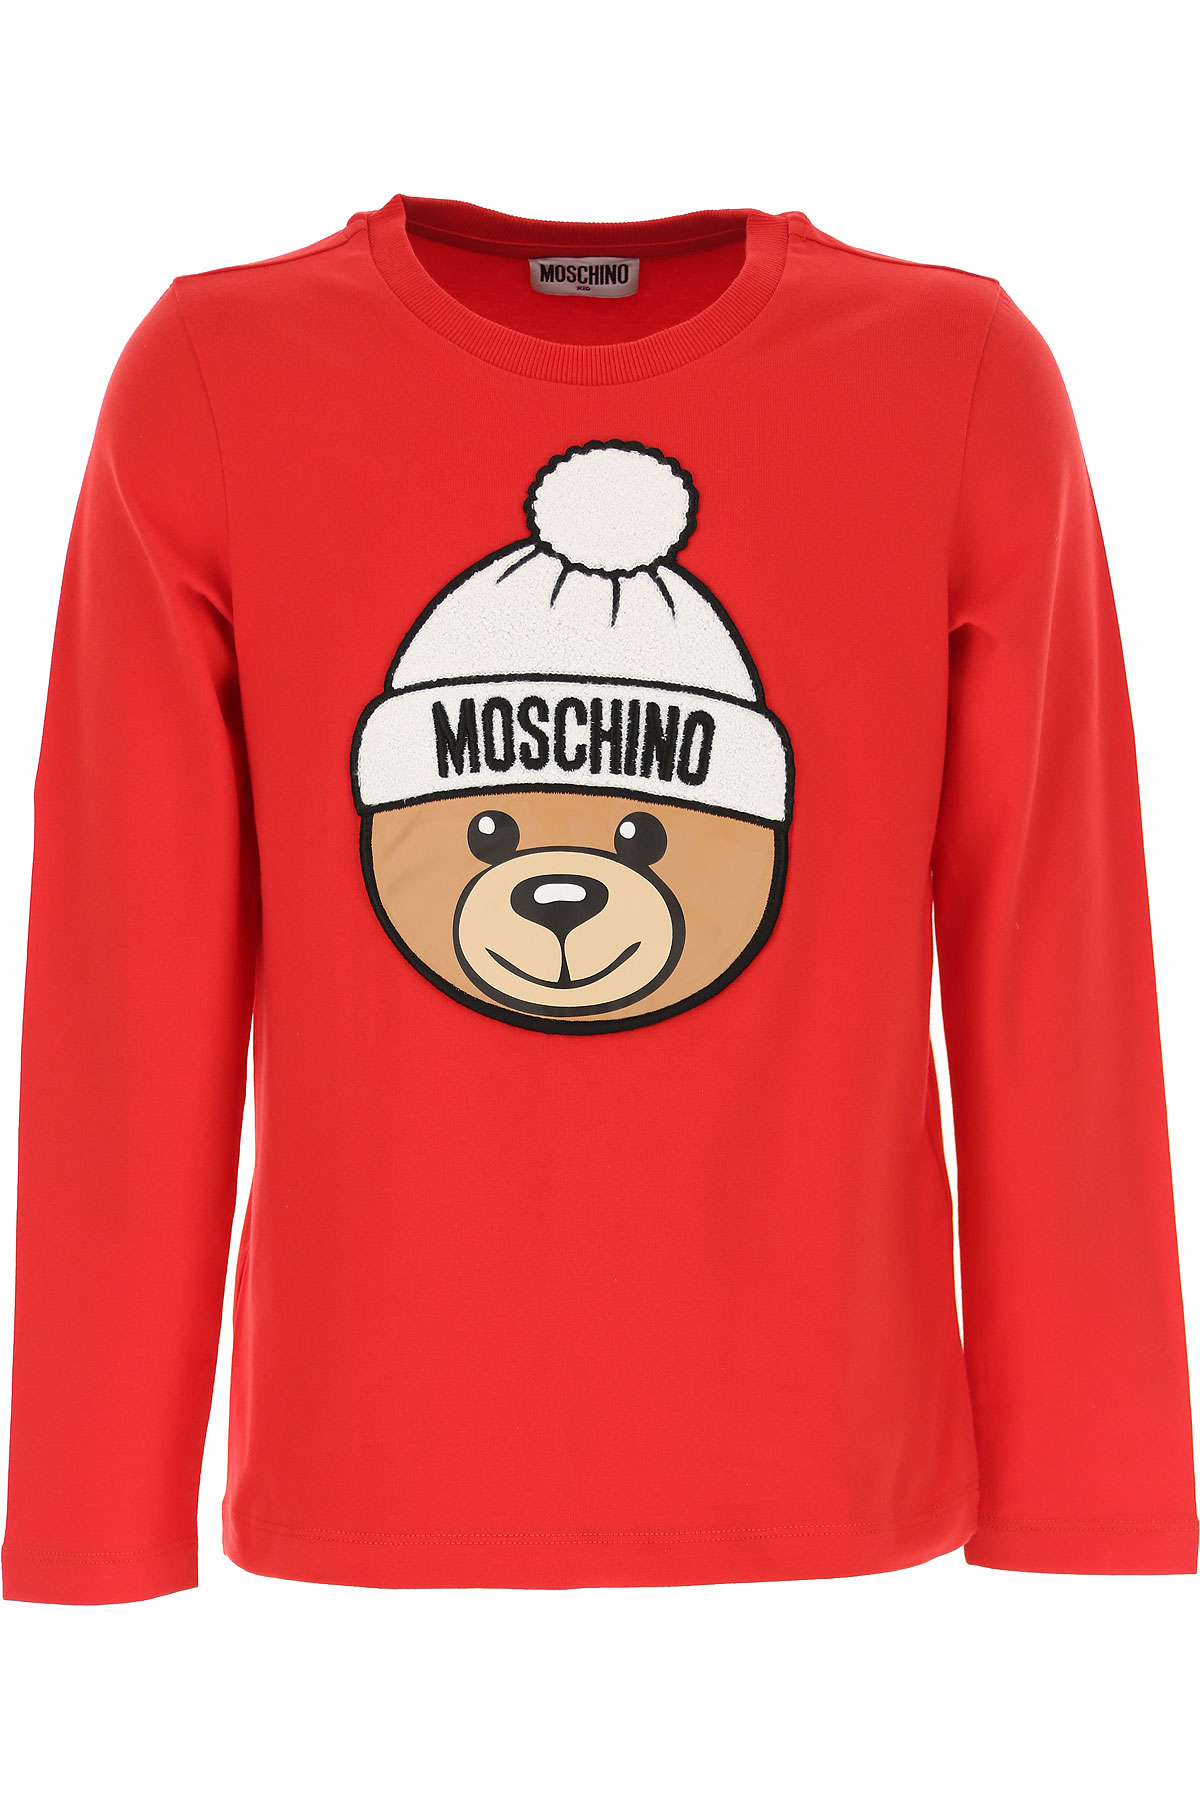 Moschino Kinder T-Shirt für Mädchen Günstig im Sale, Rot, Baumwolle, 2017, 10Y 12Y 4Y 5Y 6Y 8Y